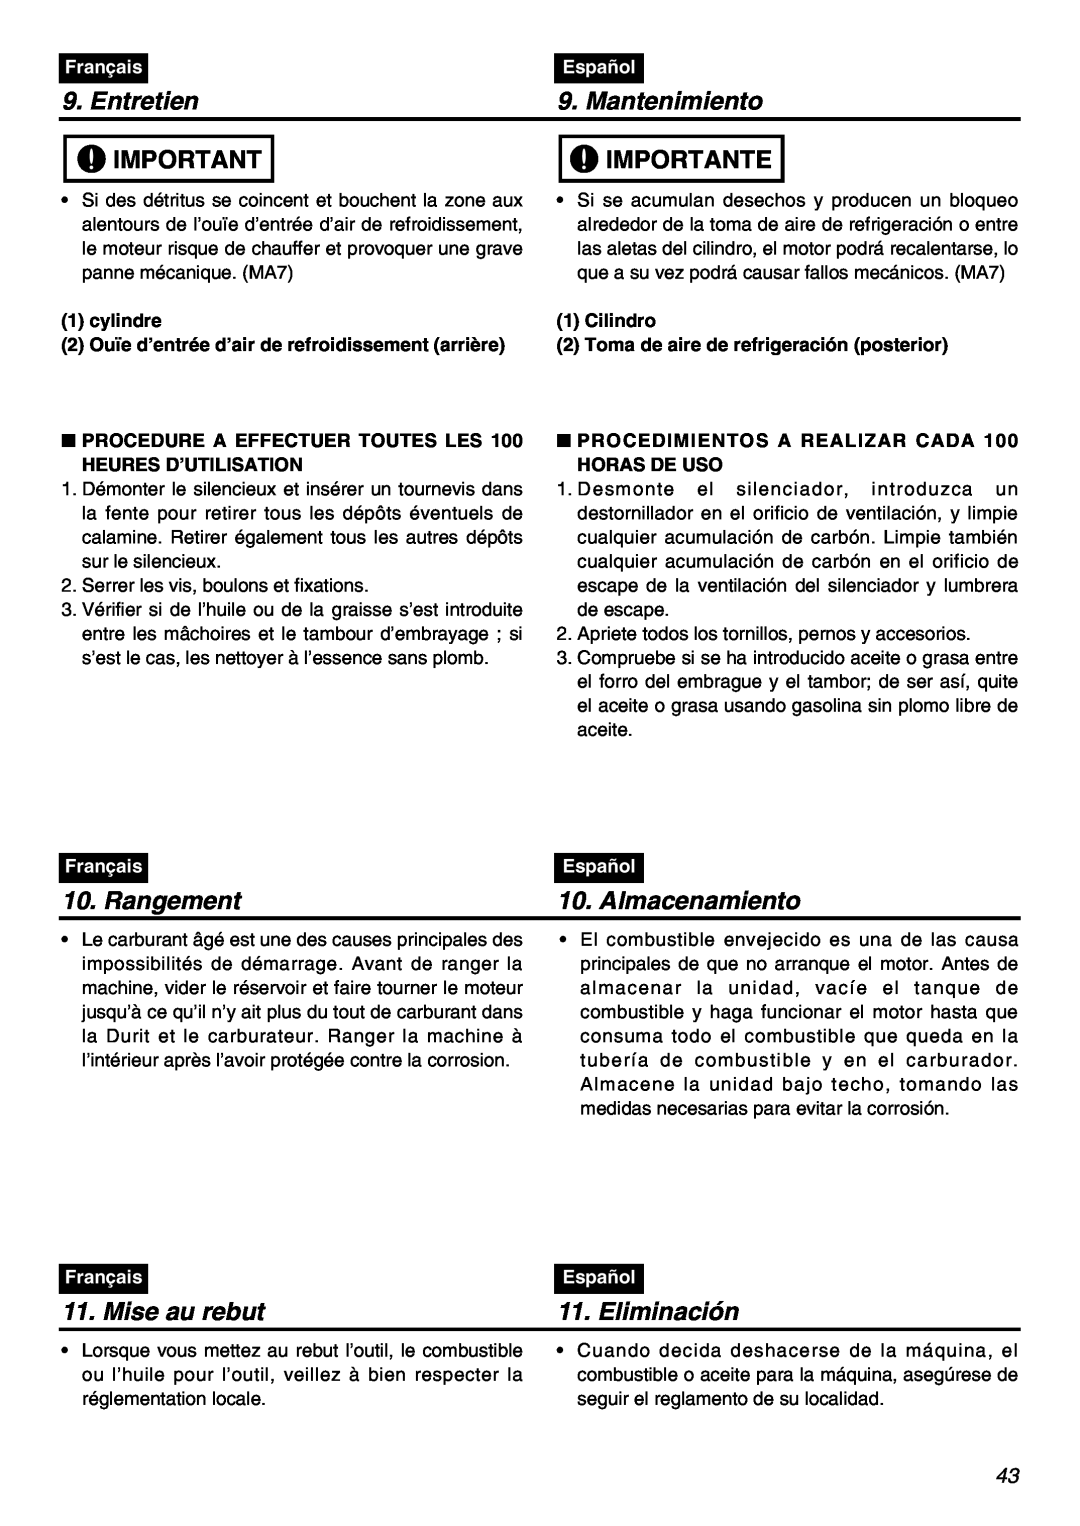 Univex SRTZ2401-CA Rangement, Almacenamiento, Mise au rebut, Eliminación, Entretien, Mantenimiento, Importante, Français 